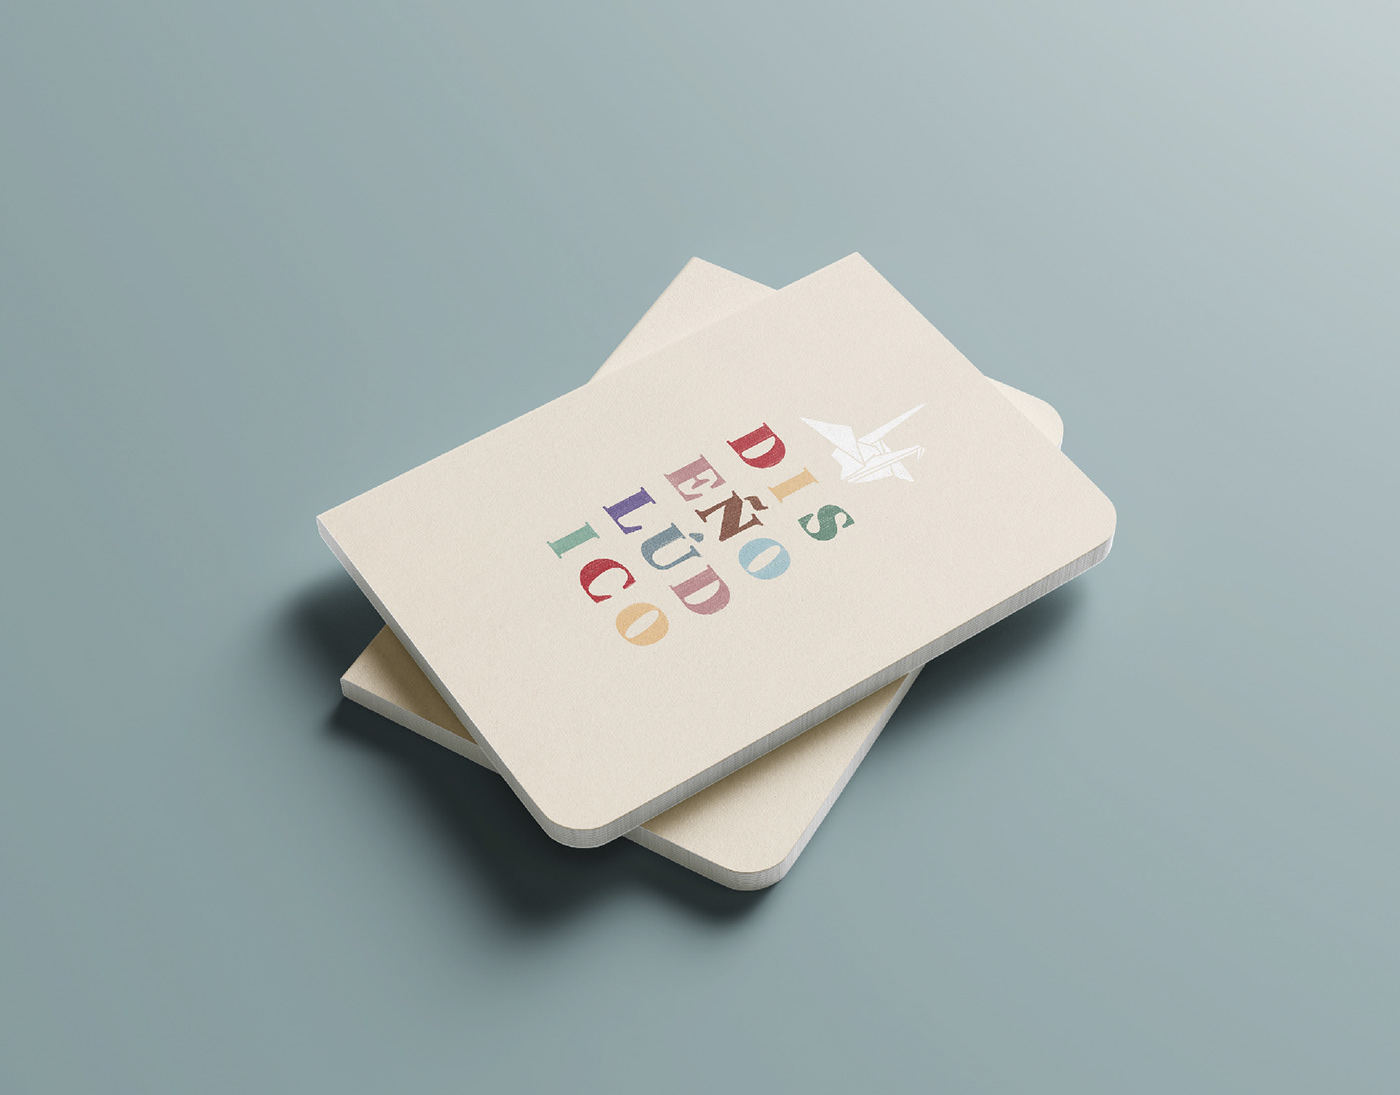 diseñadores Diseño editorial ilustración infantil isidro ferrer juego de cartas libro ilustrado Milton Glaser paula scher